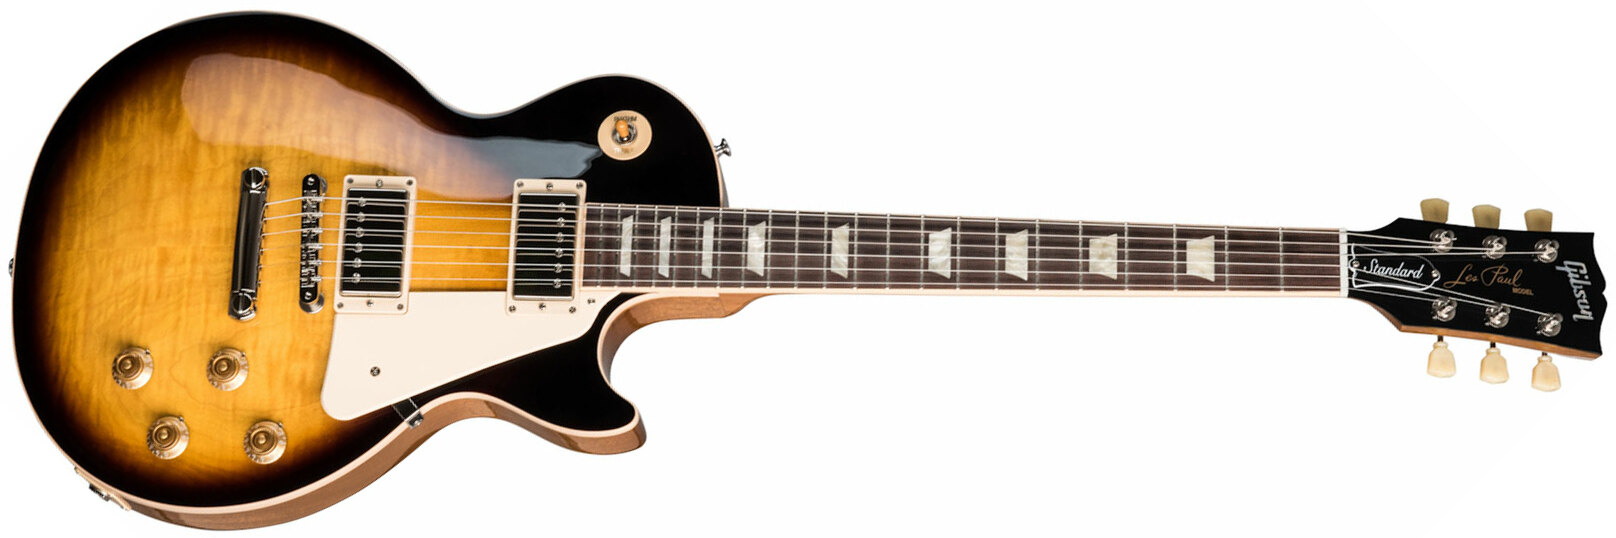 Gibson Les Paul Standard 50s Original 2h Ht Rw - Tobacco Burst - Guitarra eléctrica de corte único. - Main picture